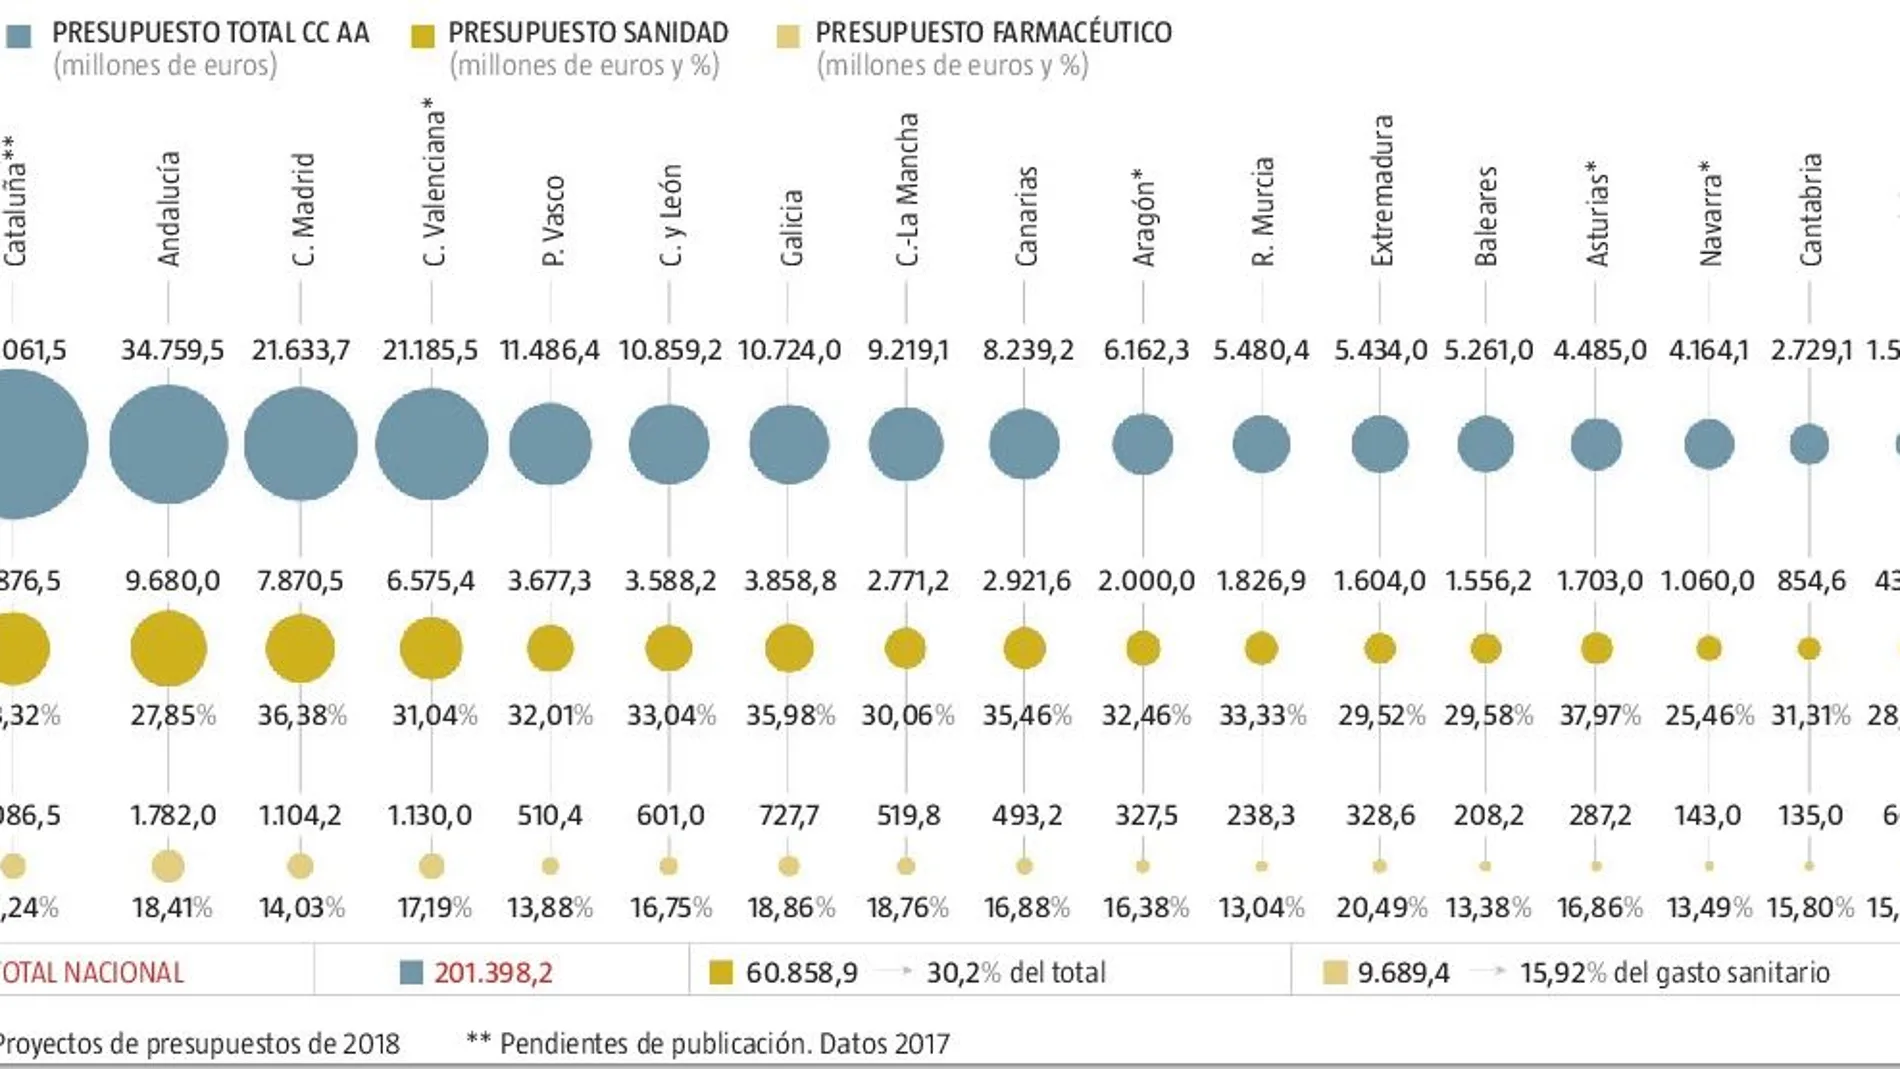 Andalucía destina 520 euros menos por enfermo que el País Vasco